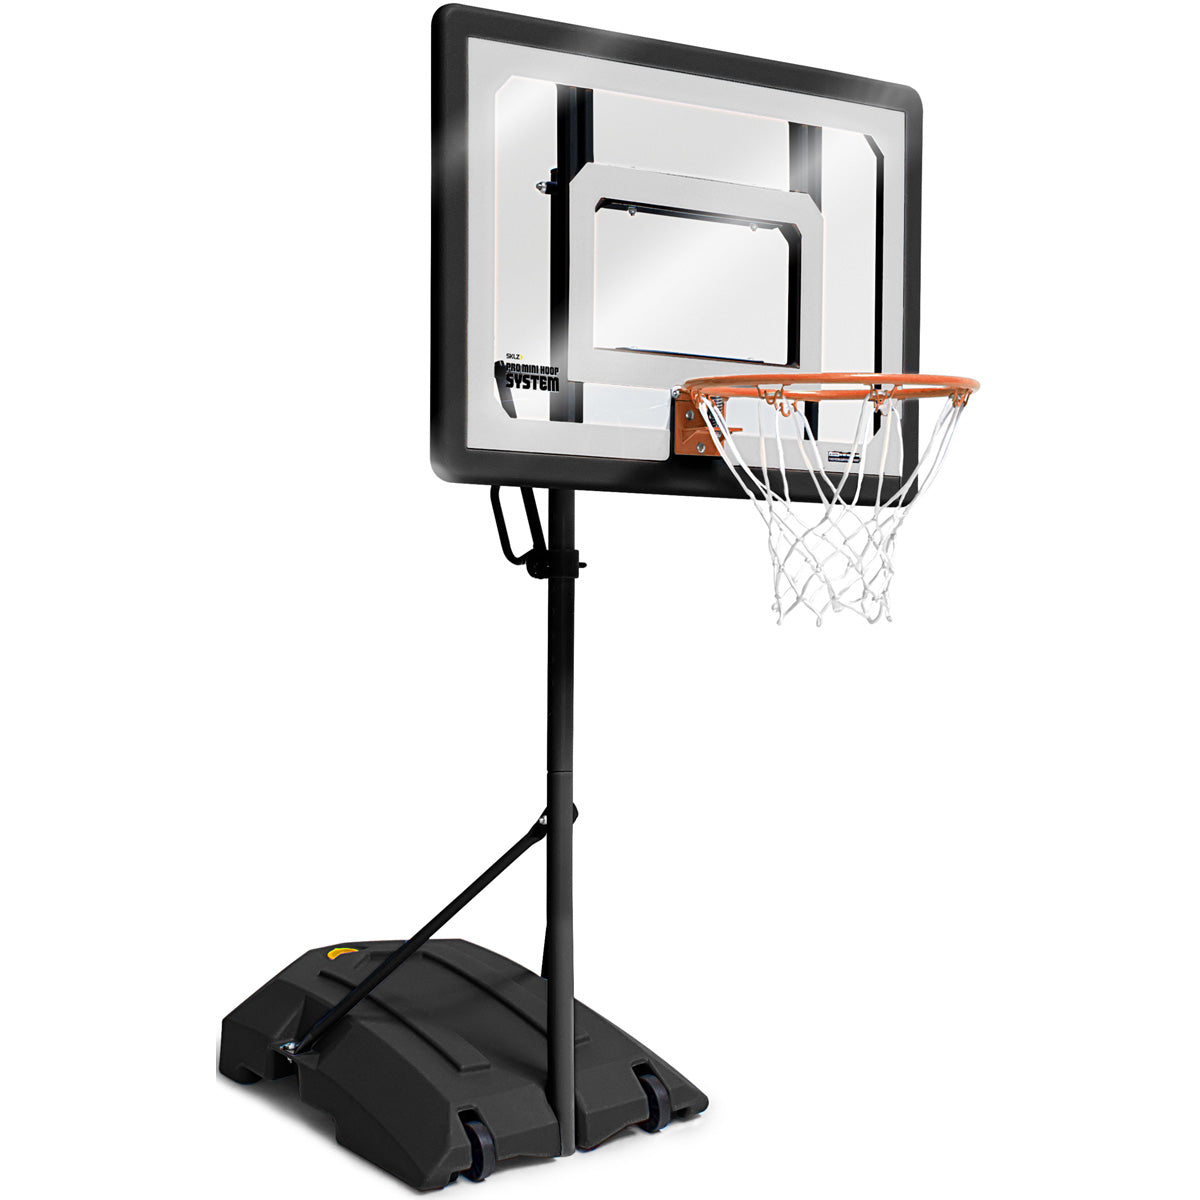 SKLZ Pro Mini Basketball Hoop System SKLZ